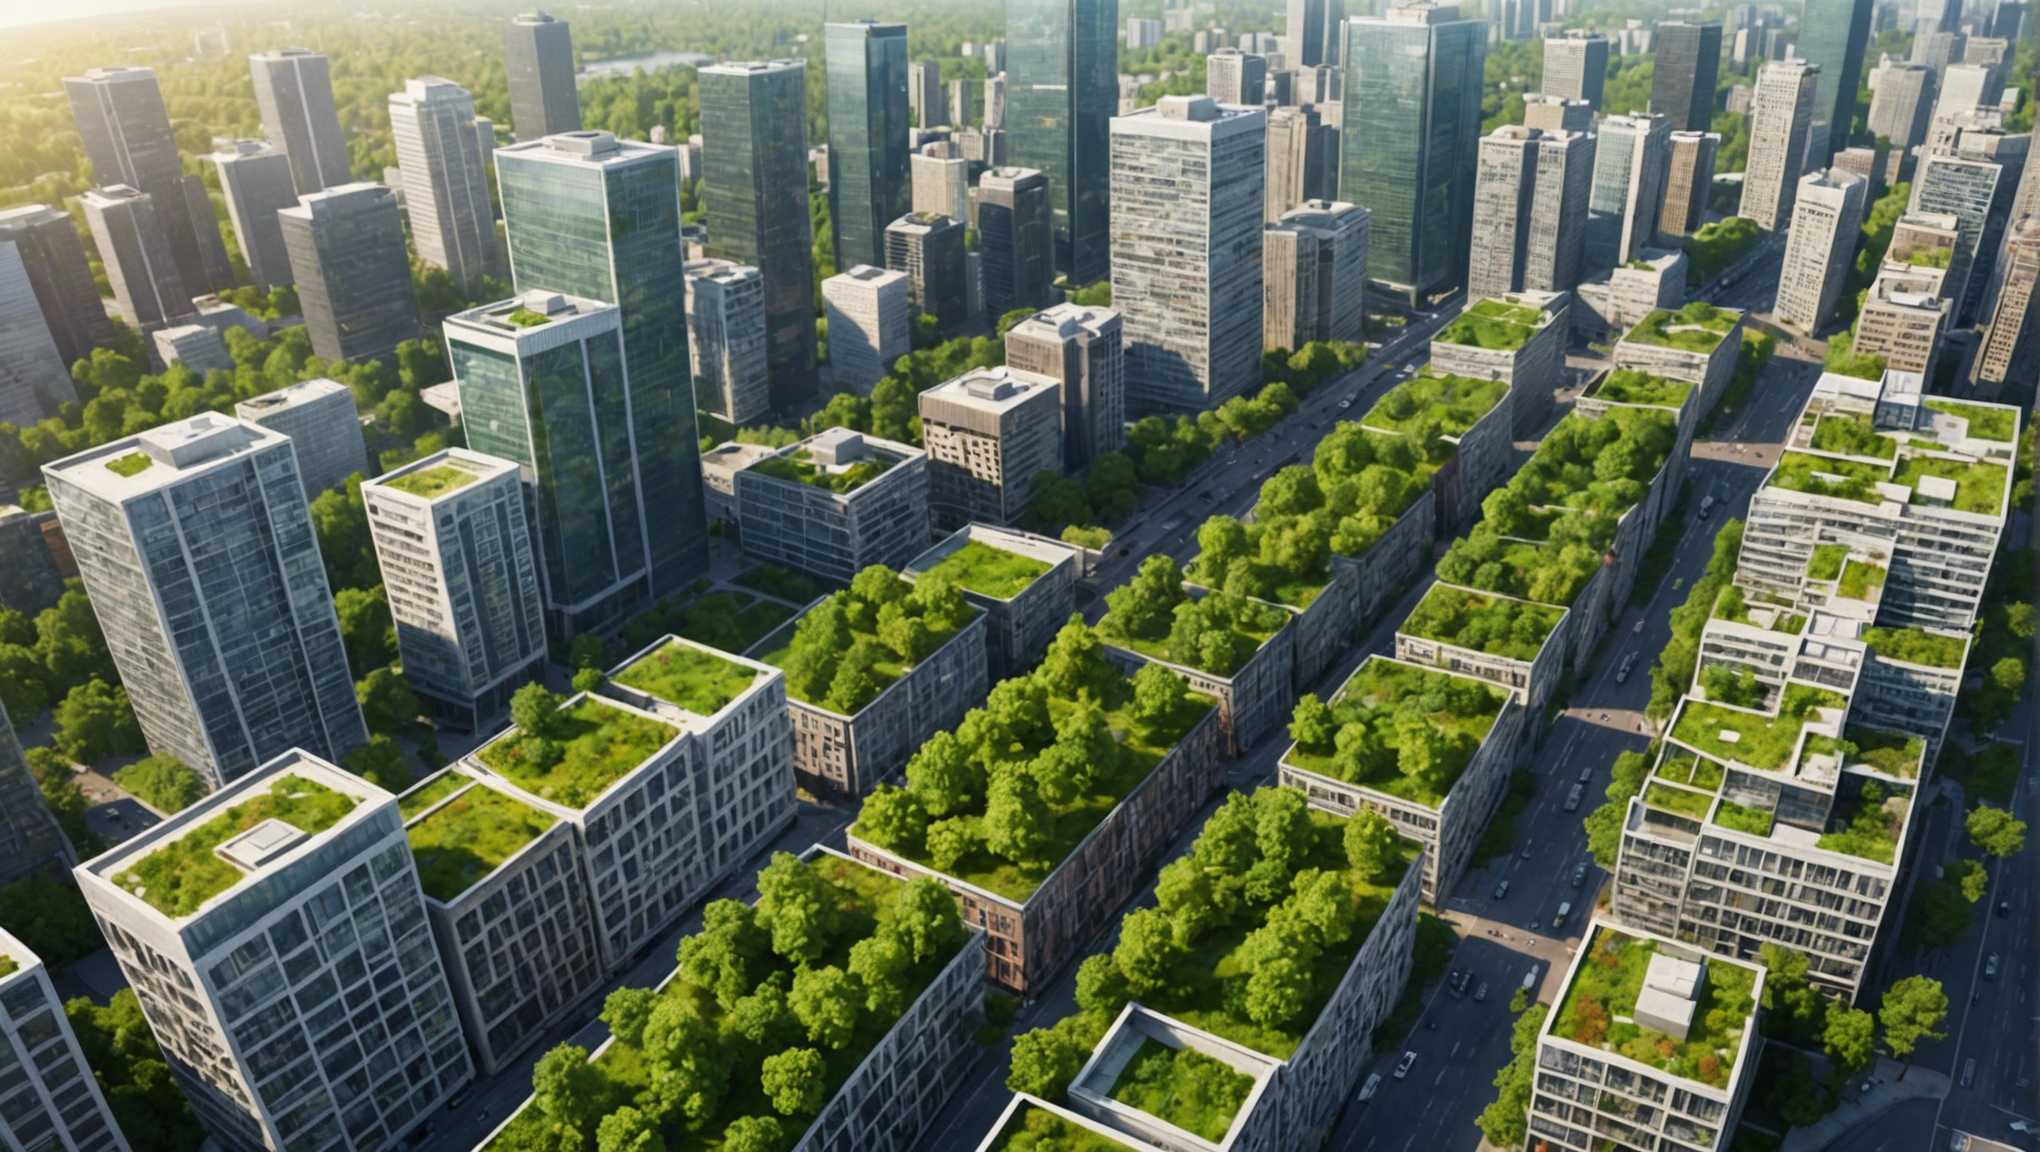 découvrez comment préserver la biodiversité urbaine pour un avenir plus vert : actions, initiatives et bonnes pratiques pour favoriser la cohabitation harmonieuse entre la nature et la ville.